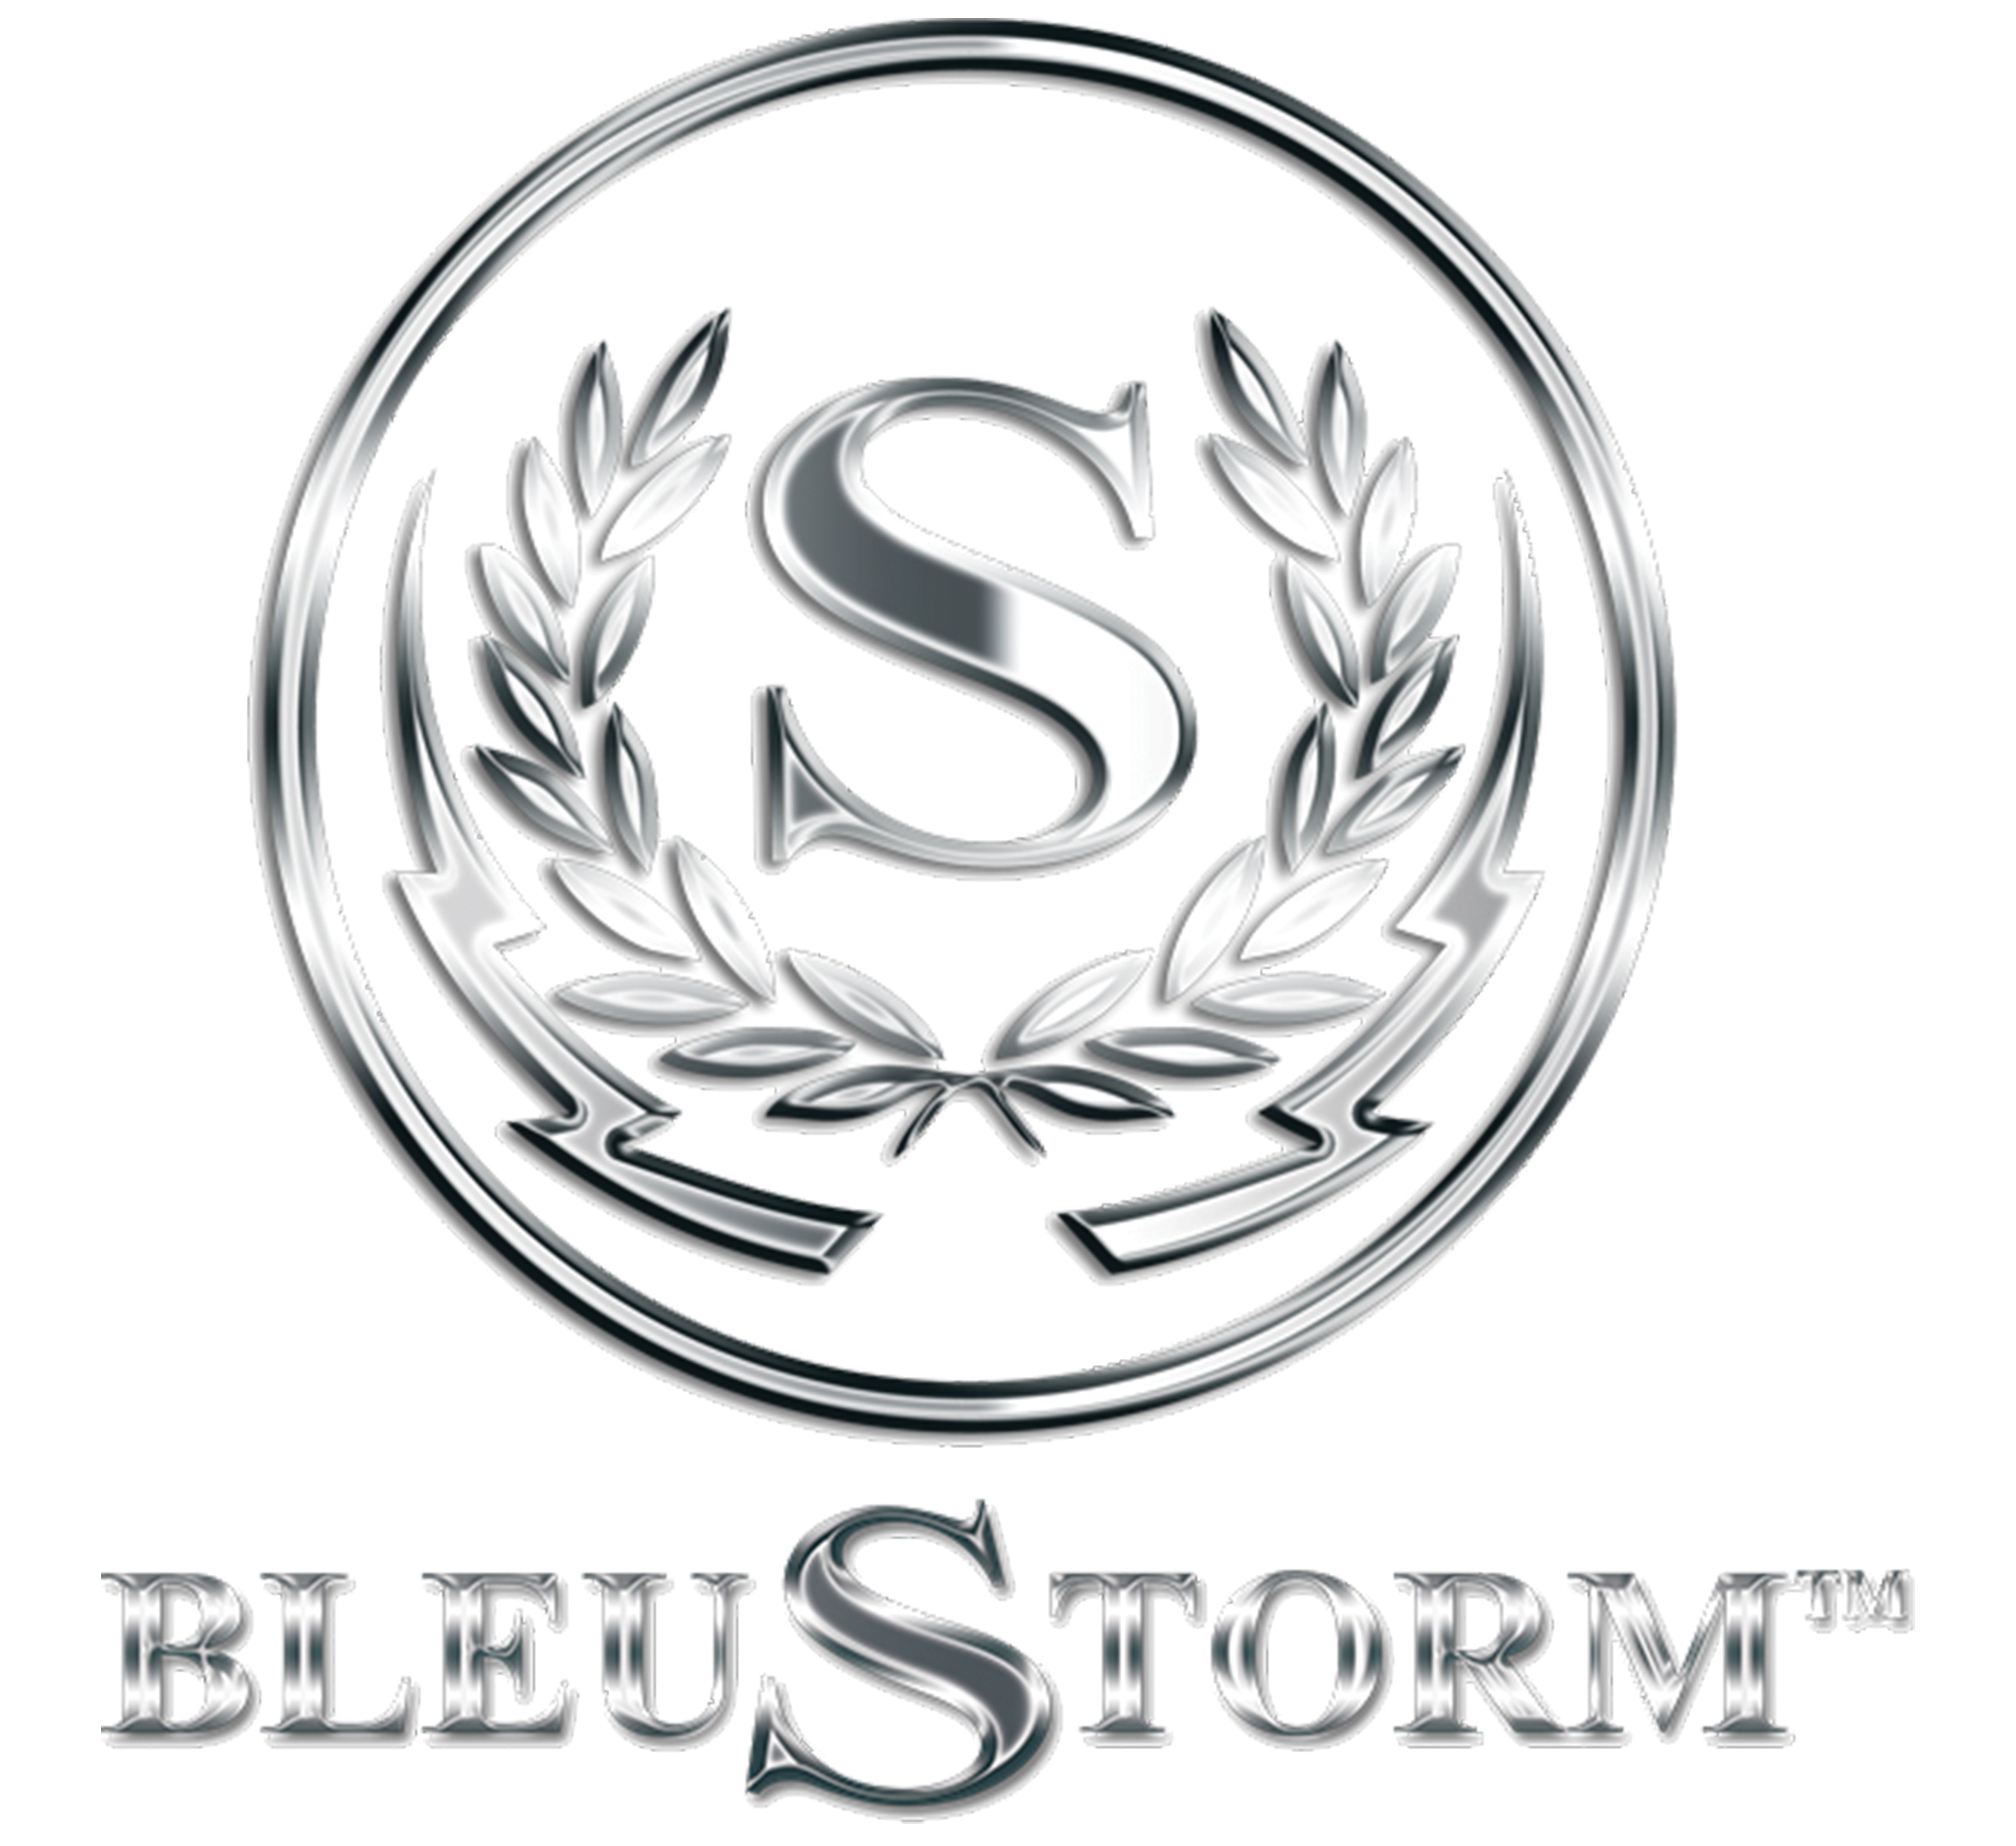 Bleu Storm Vodka